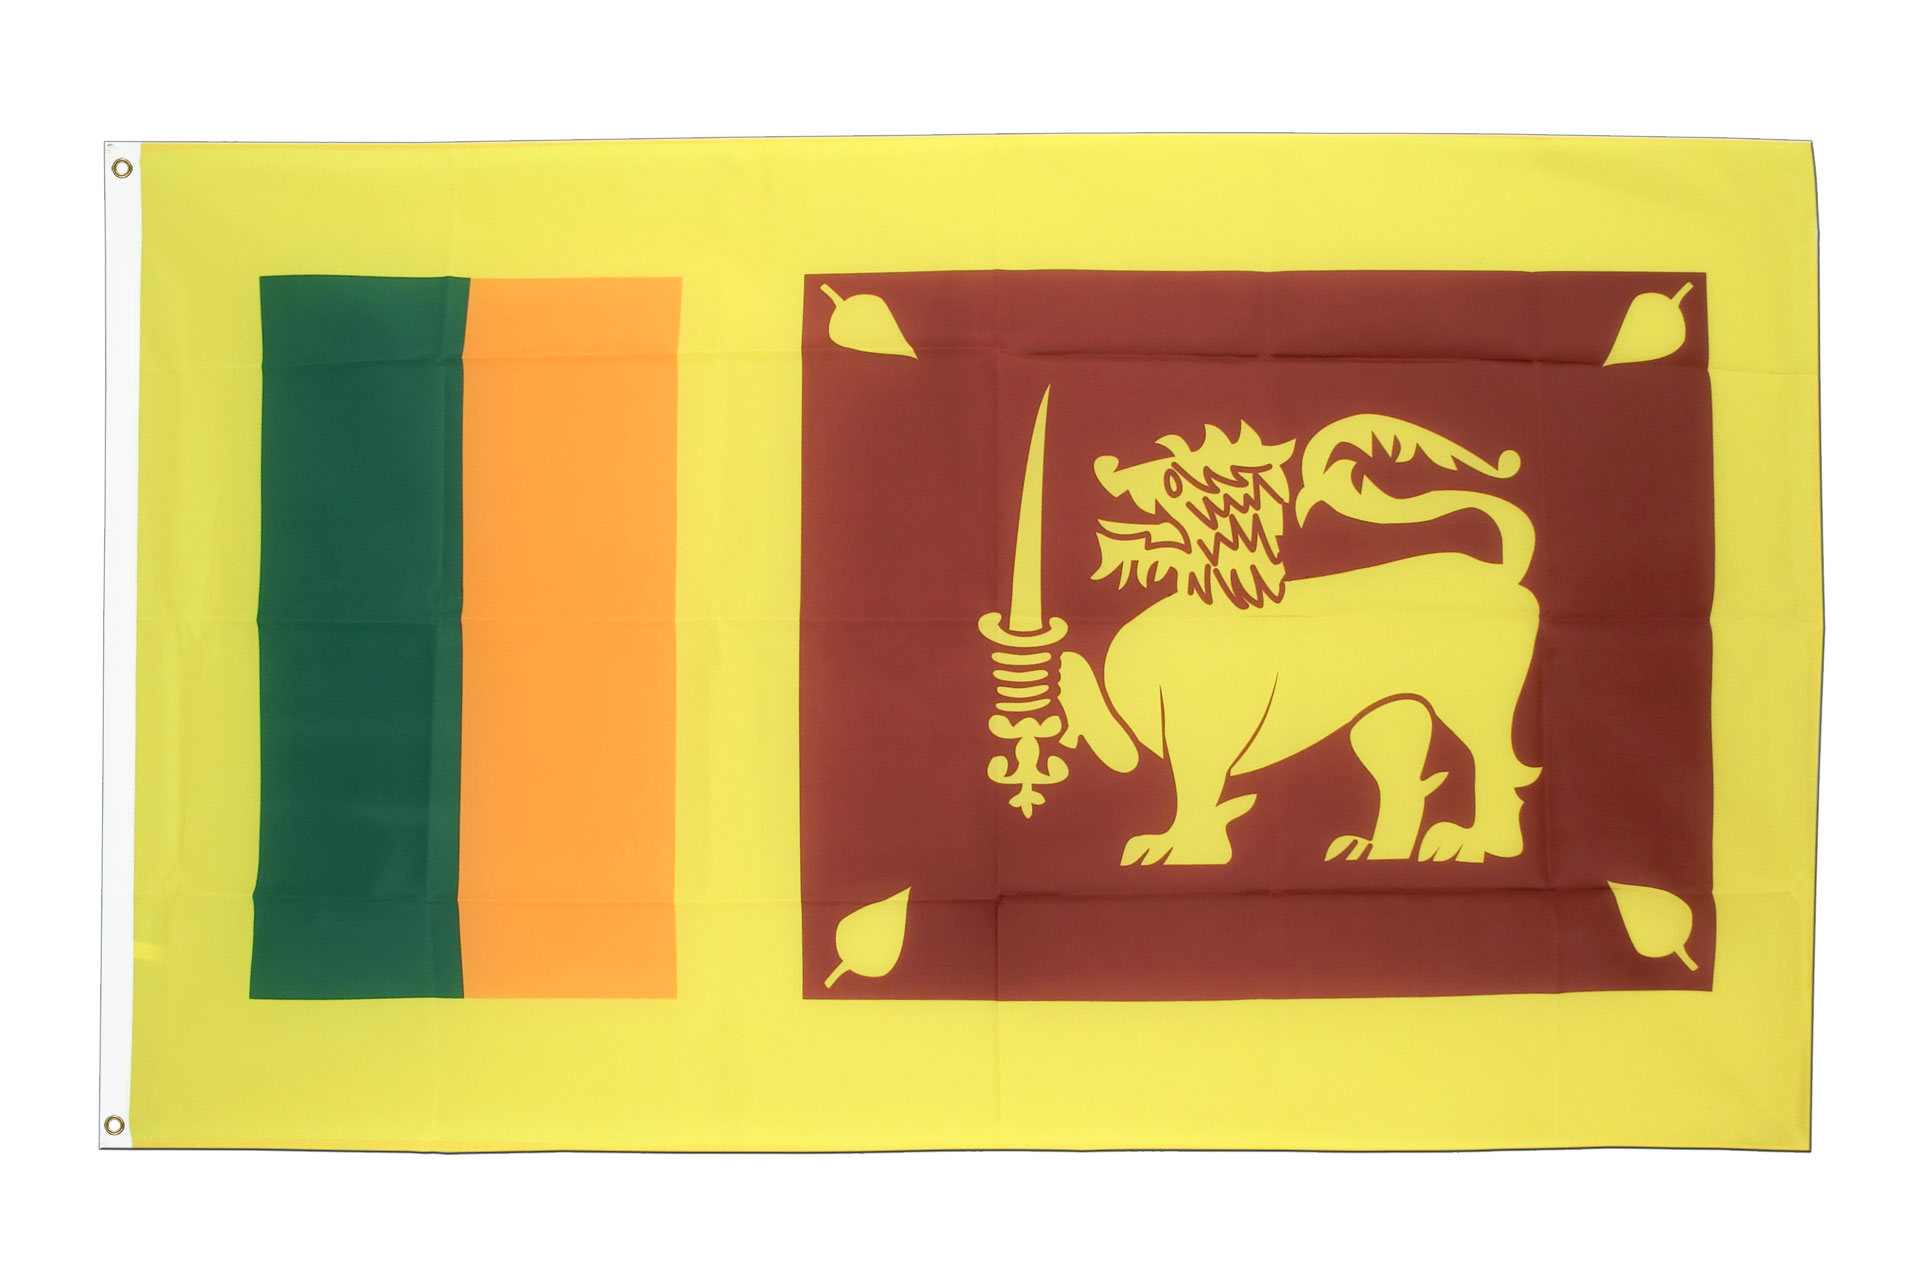 Sri Lanka Flagge - Sri-lankische Fahne kaufen - FlaggenPlatz